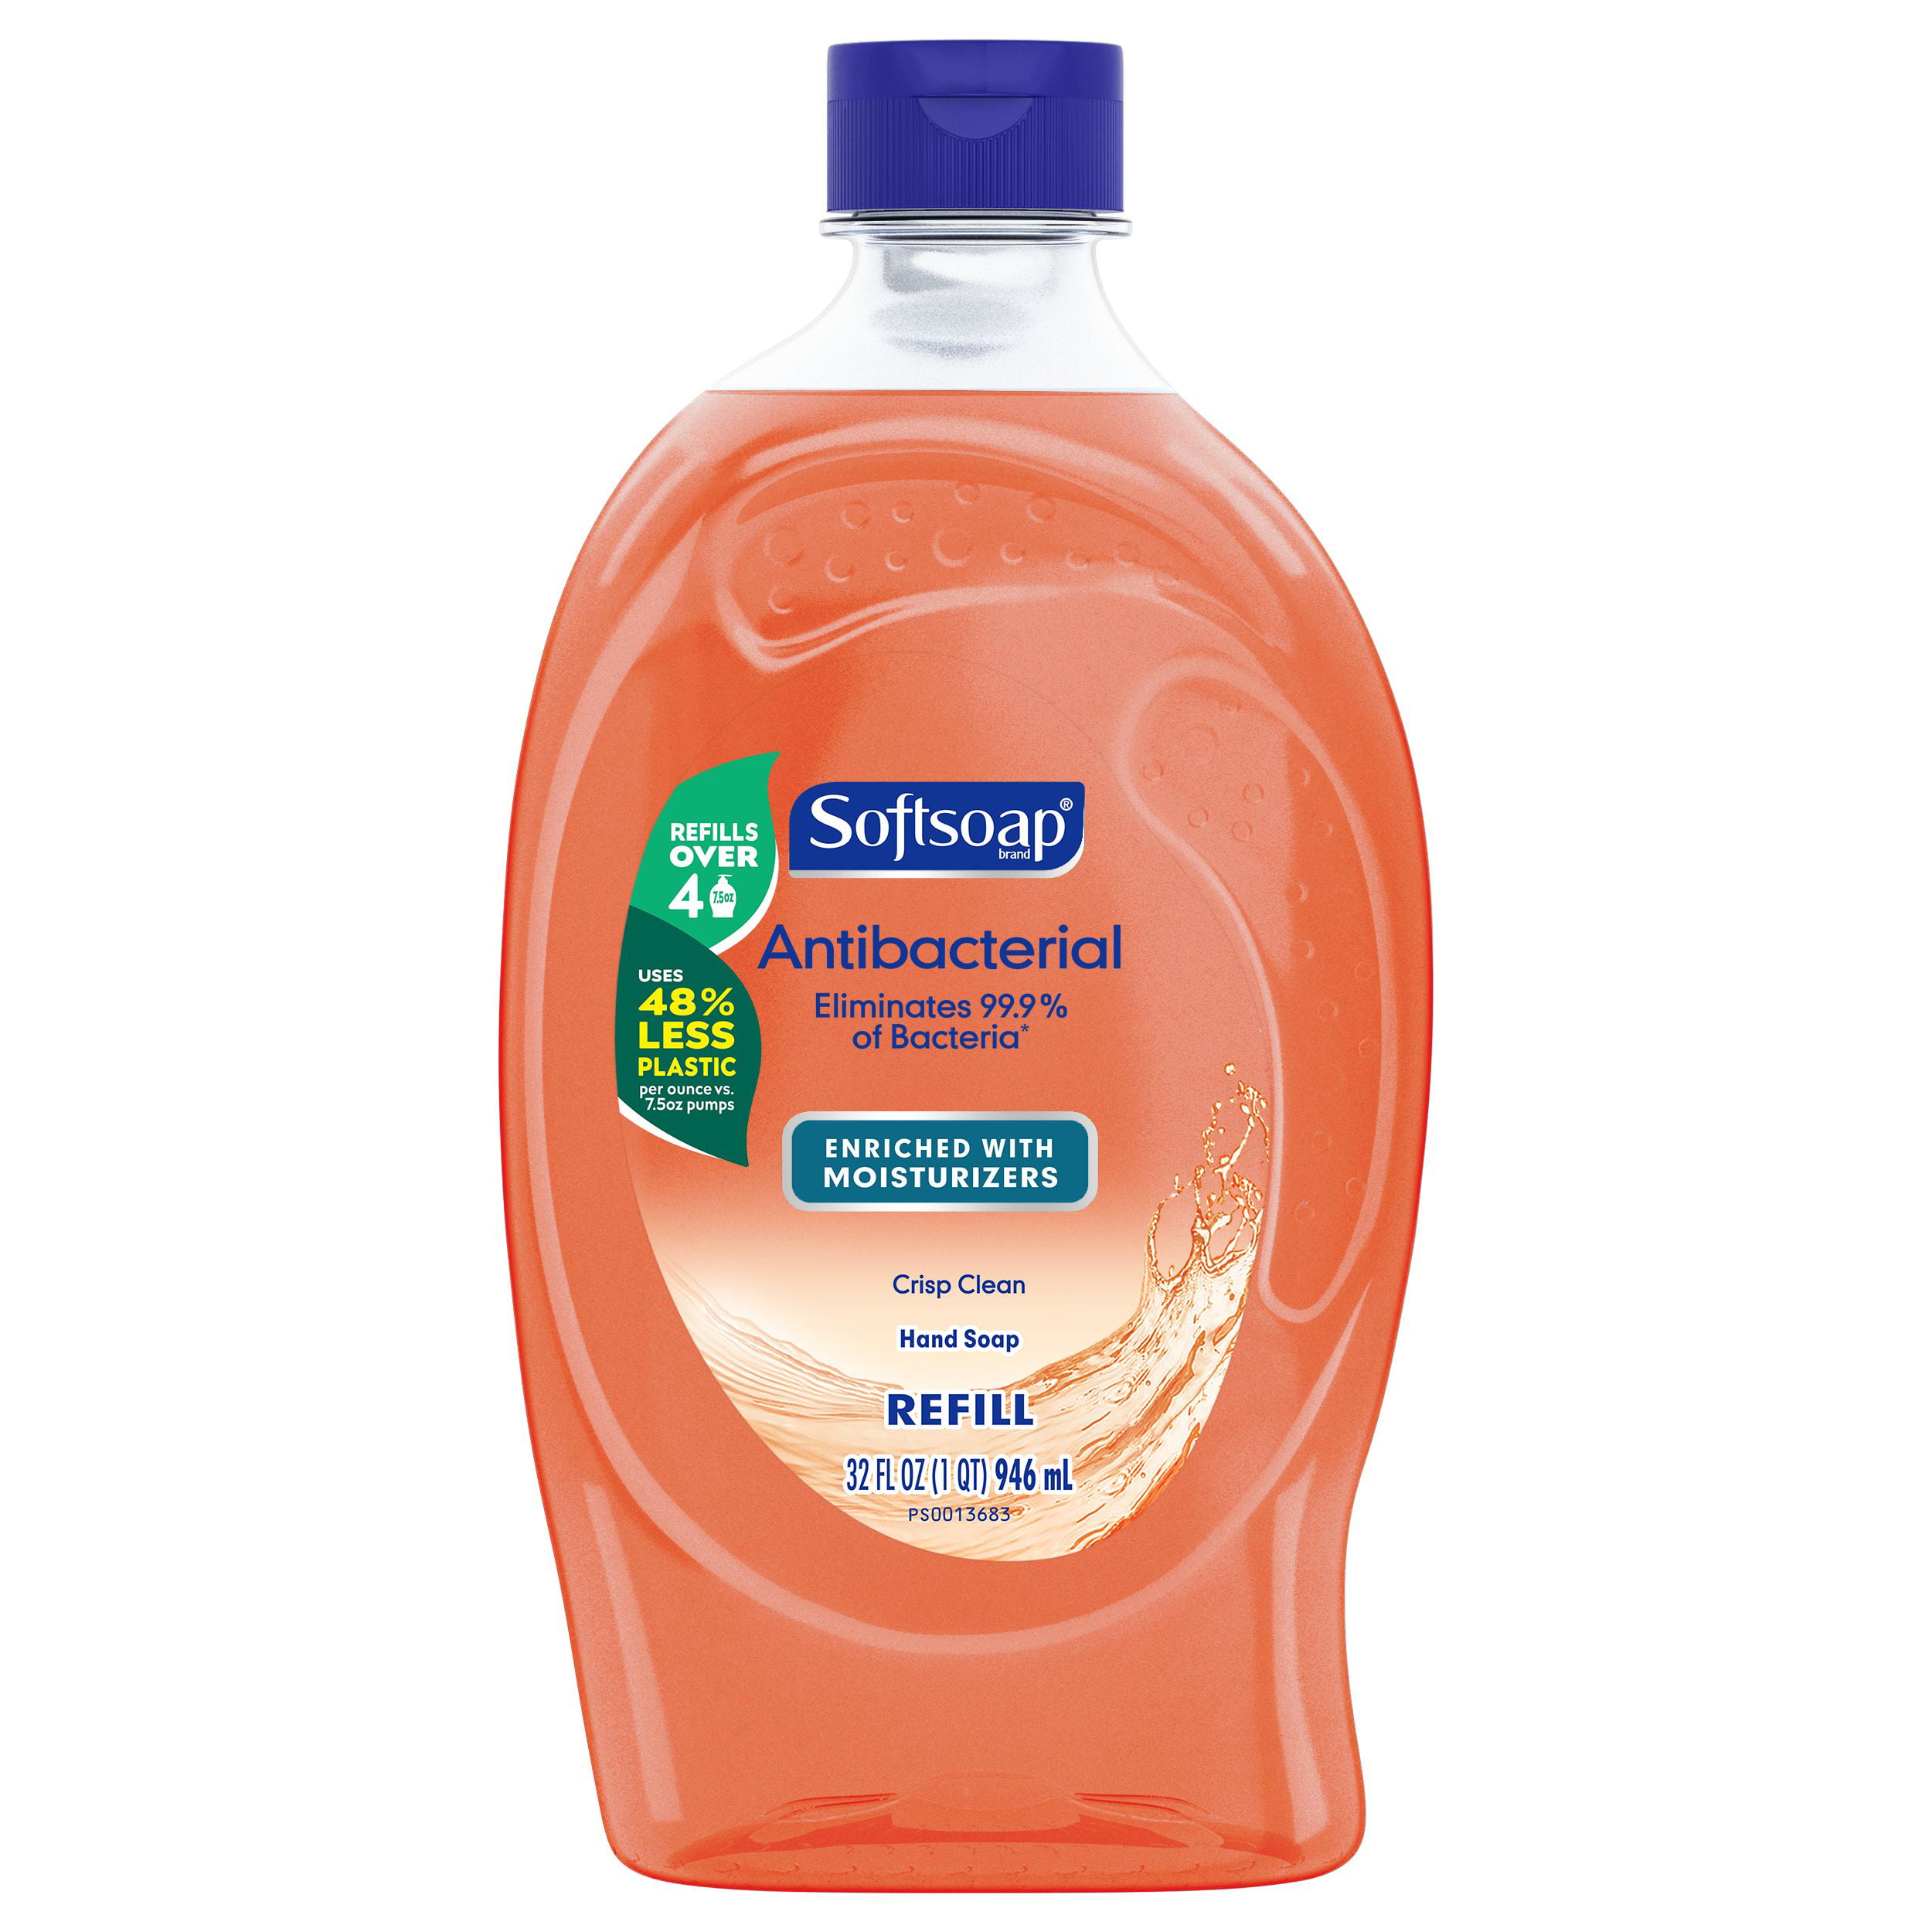 softsoap-antibacterial-hand-soap-refill-crisp-clean-32-fl-oz